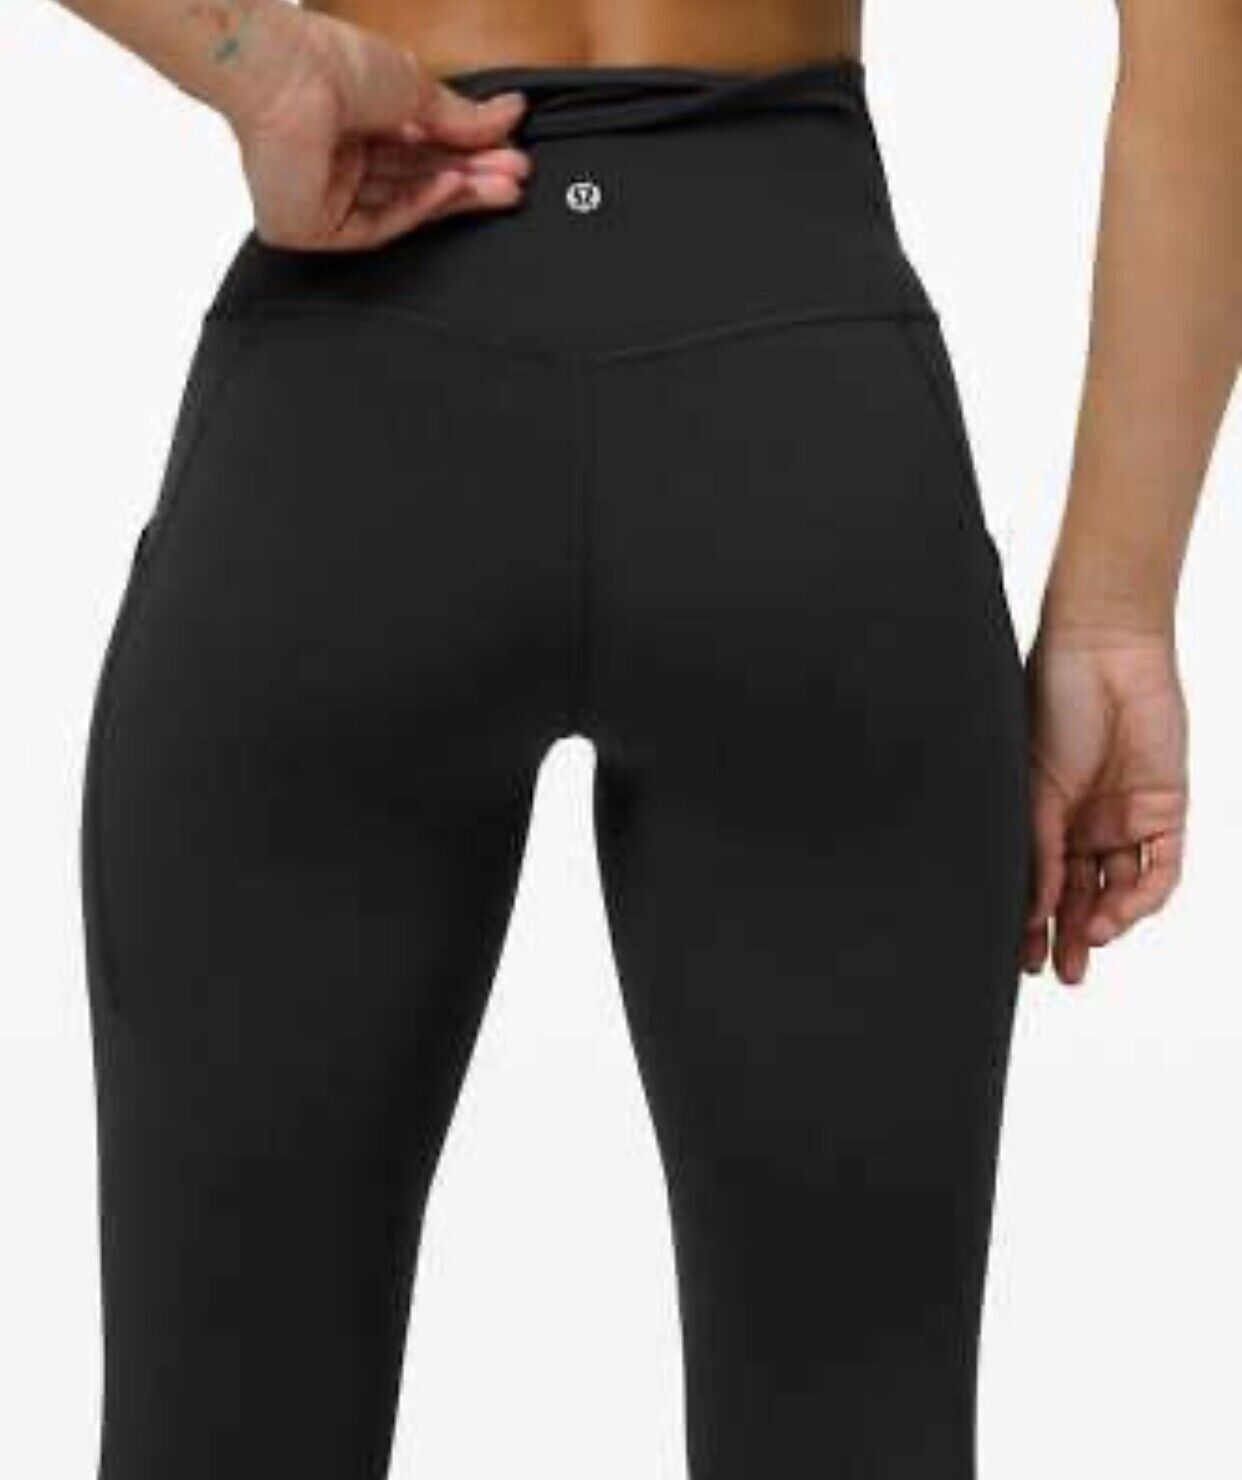 Купить Lululemon Align Yoga Pants 25 дюймов, черные женские леггинсы с  высокой посадкой, размер 2/4/6/8/10/12, цена 5 690 руб — (155845699401), США